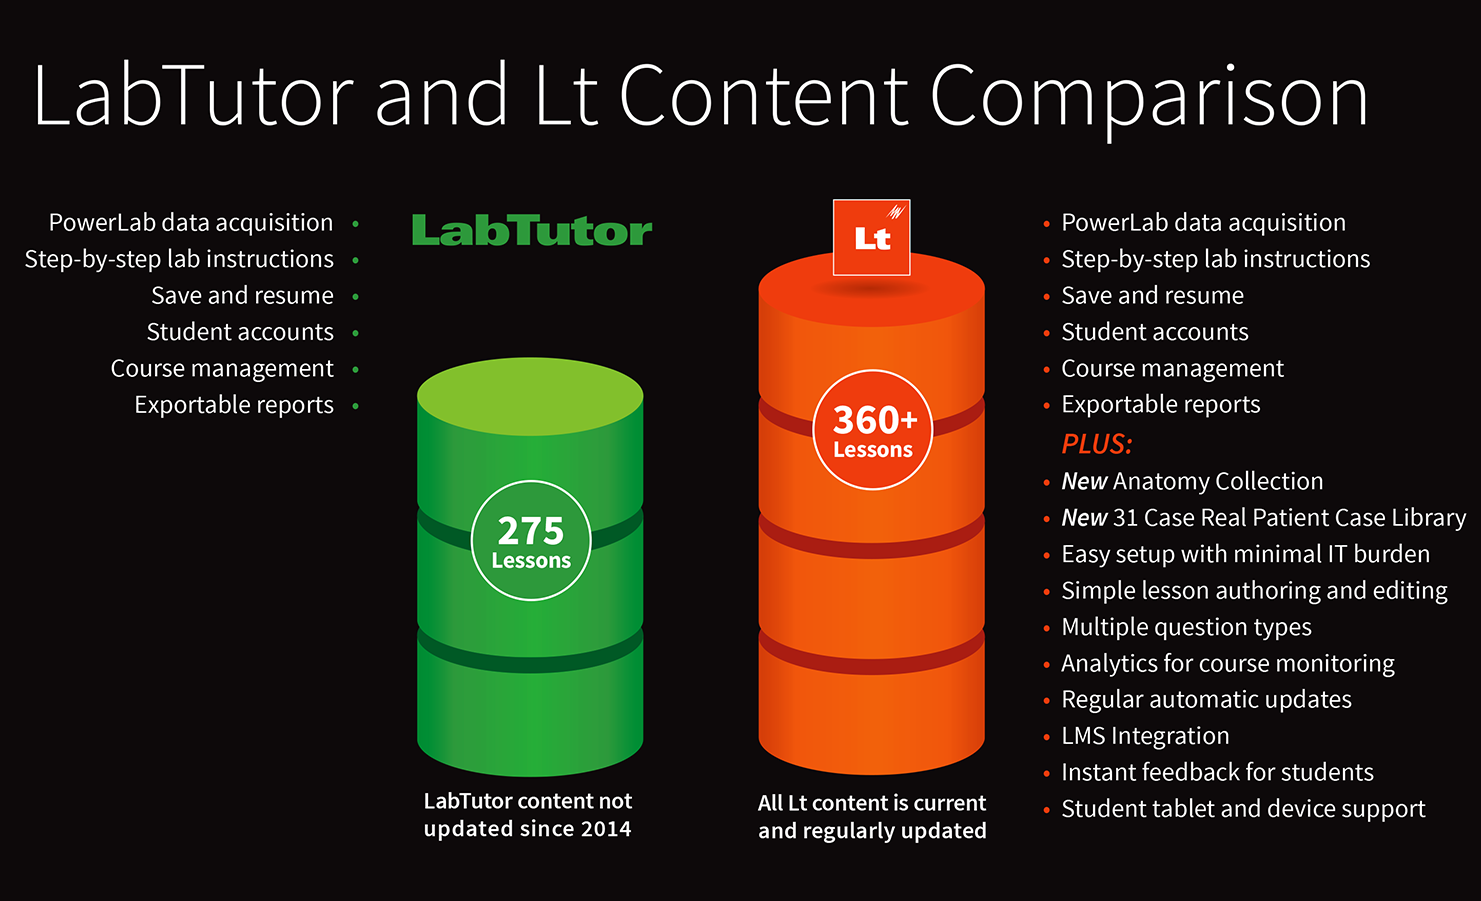 Lt vs LabTutor content comparison chart